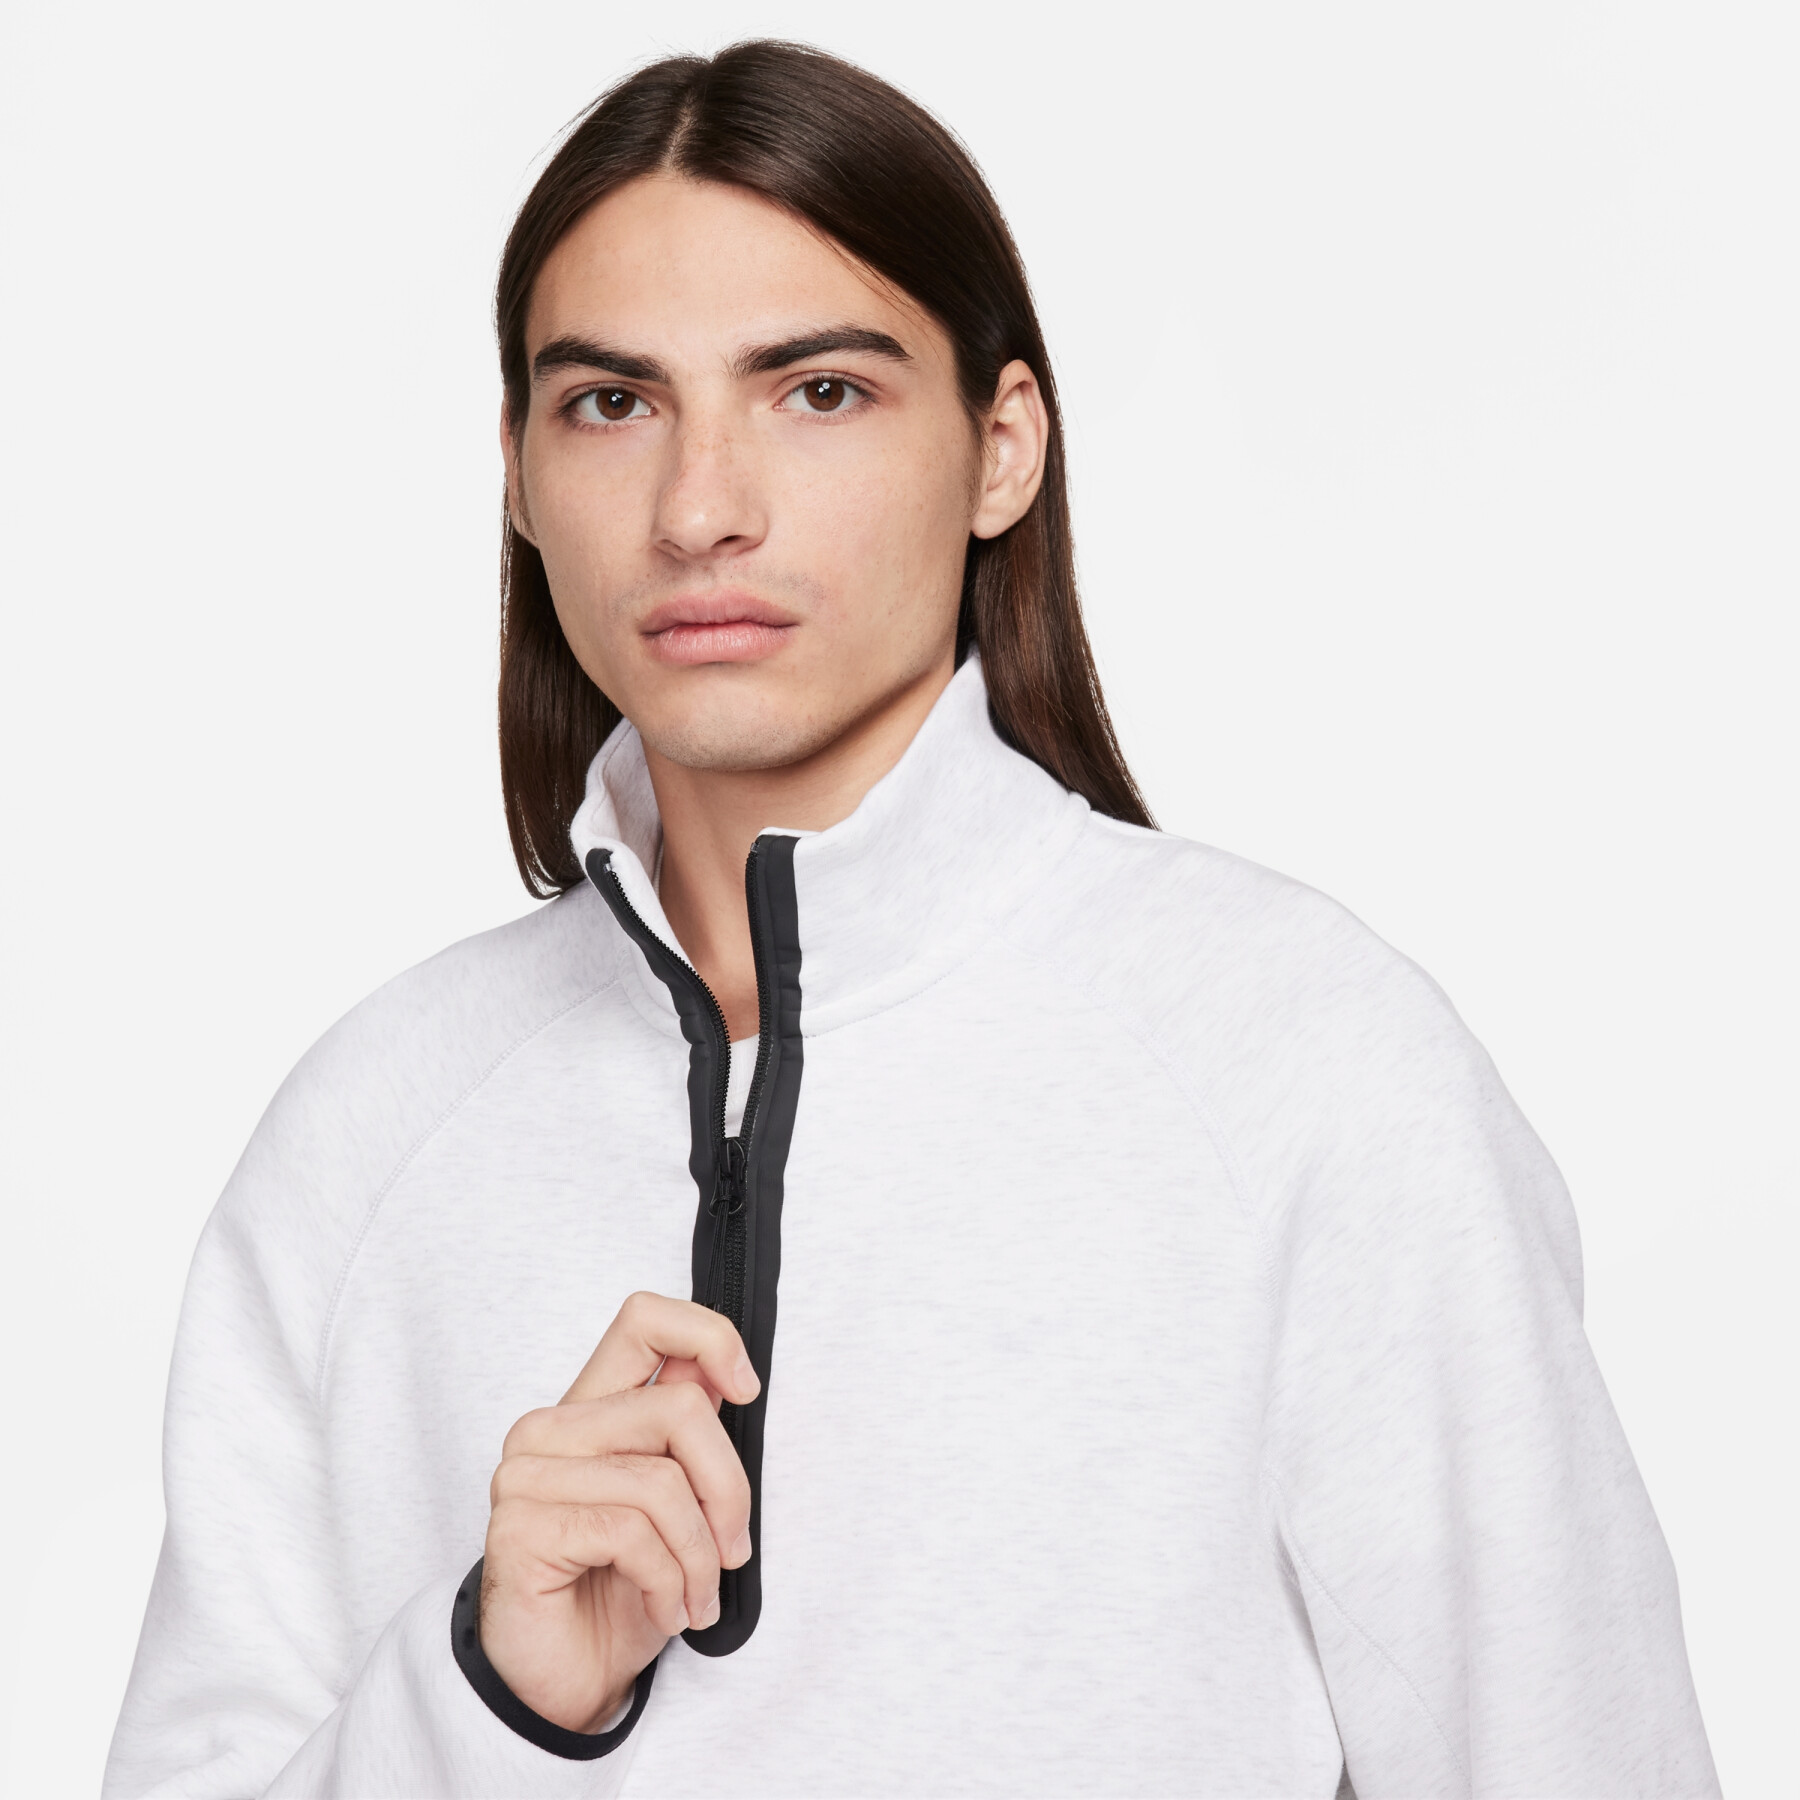 Sweatshirt 1/2 zipped Nike Tech Fleece